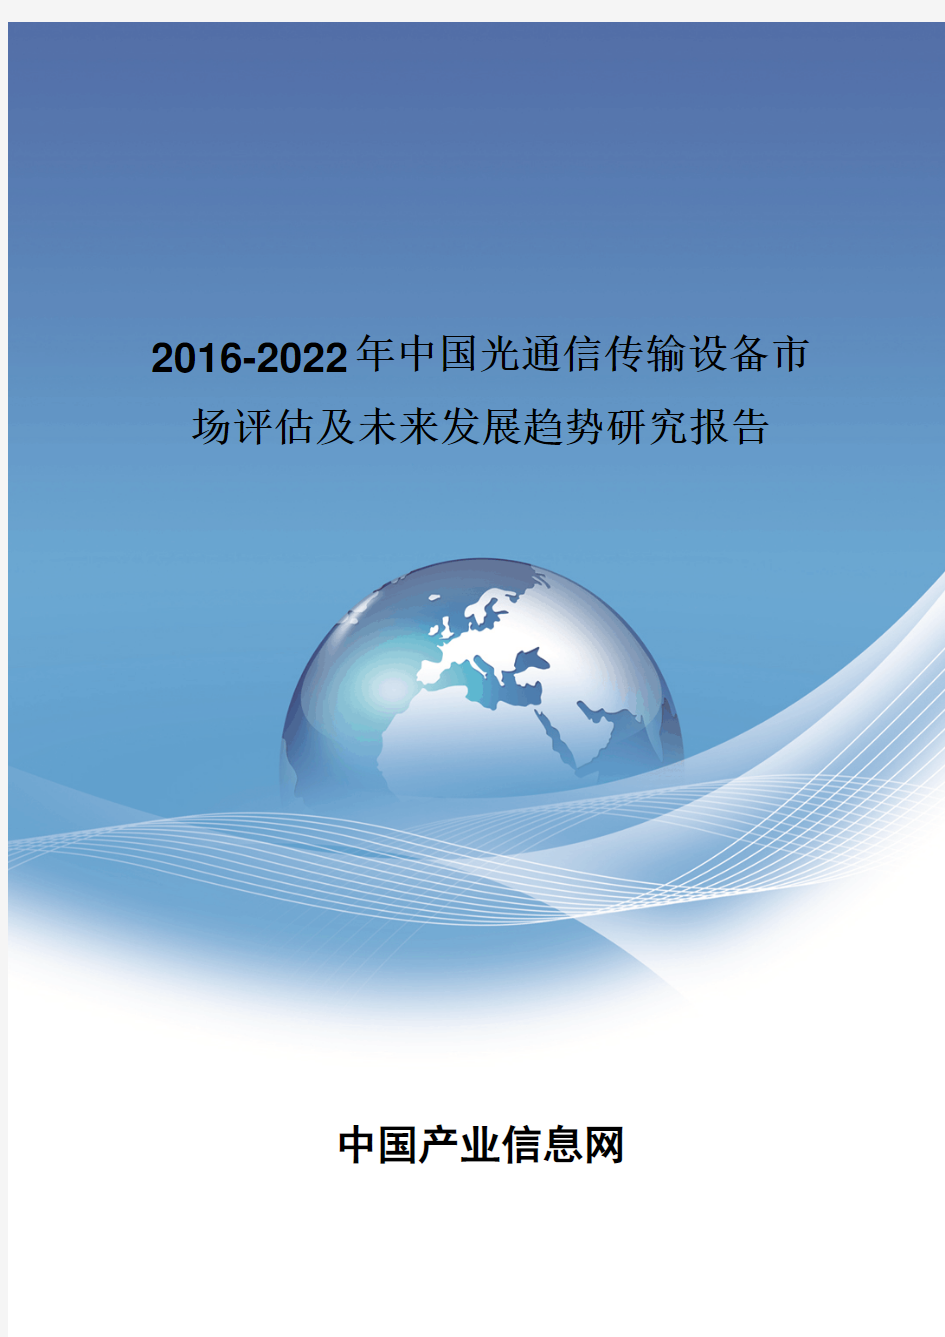 2016-2022年中国光通信传输设备市场评估报告